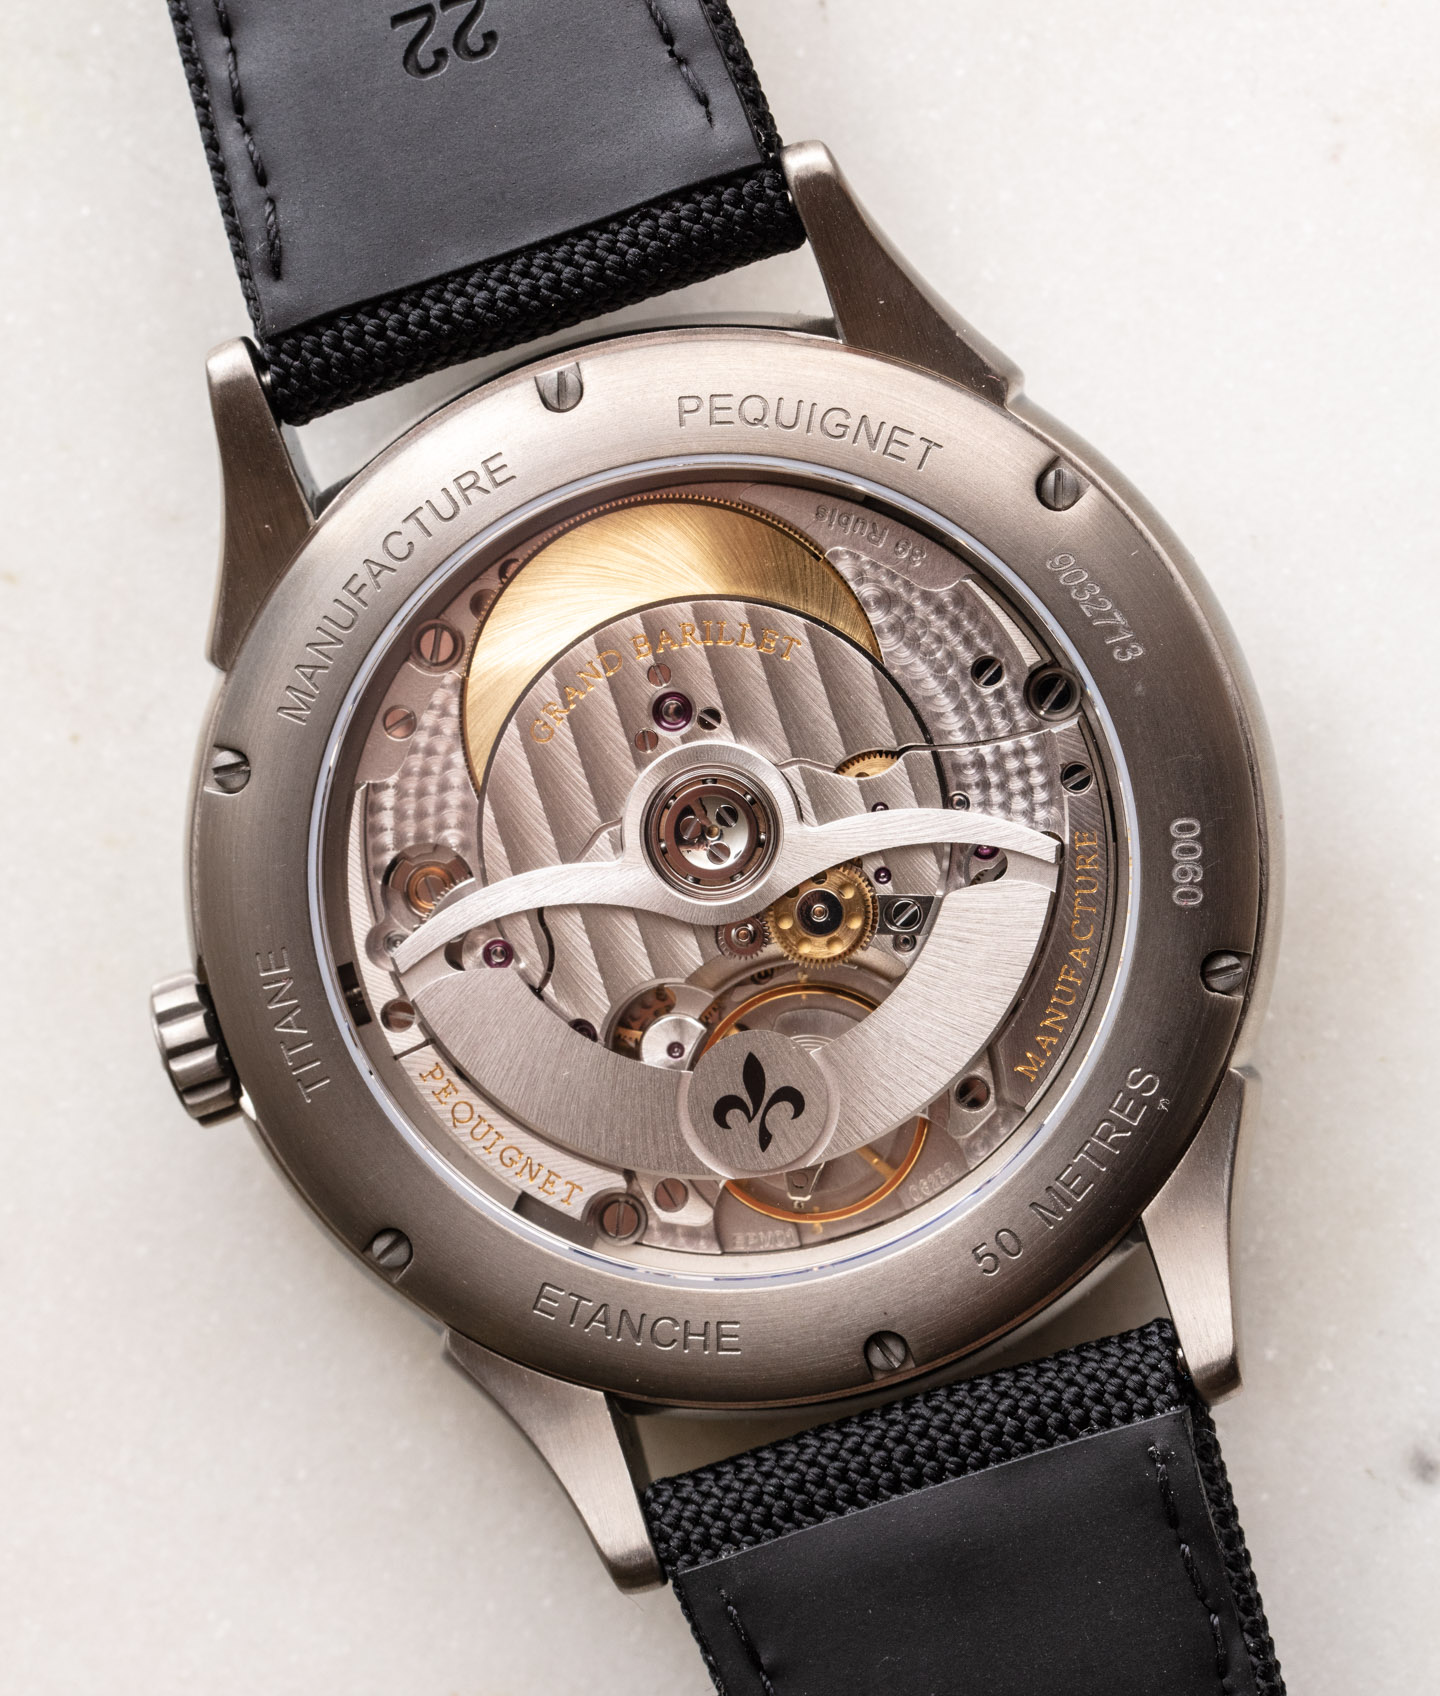 充满灵感和原创性的Pequignet手表Royale Titane